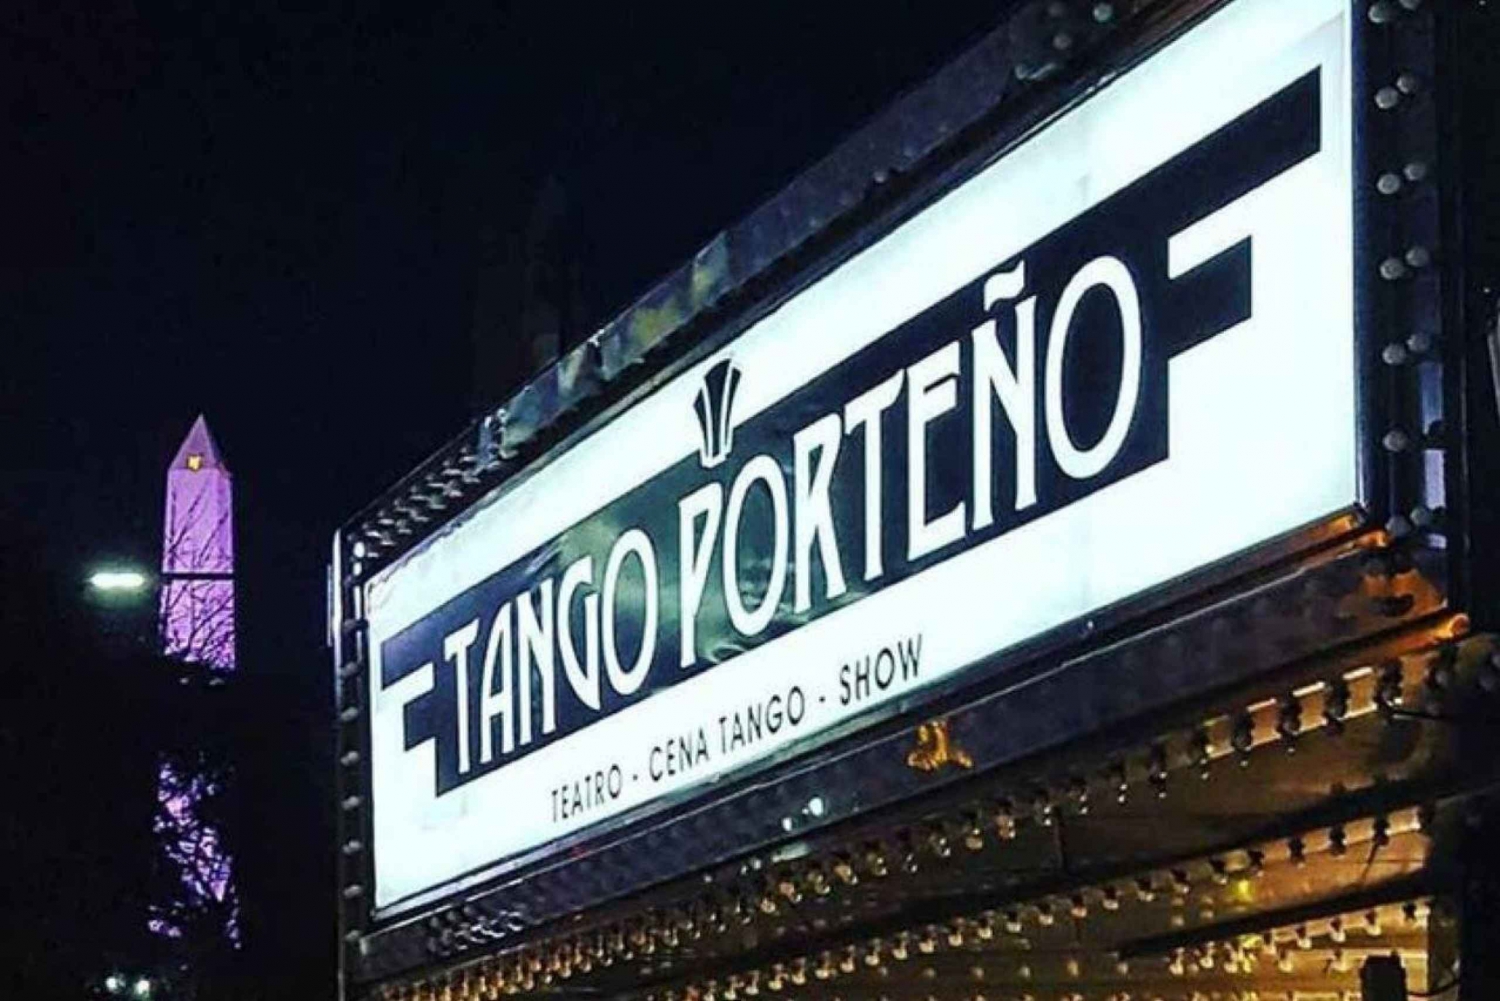 Buenos Aires: Tango Porteño Show-billet med mulighed for middag